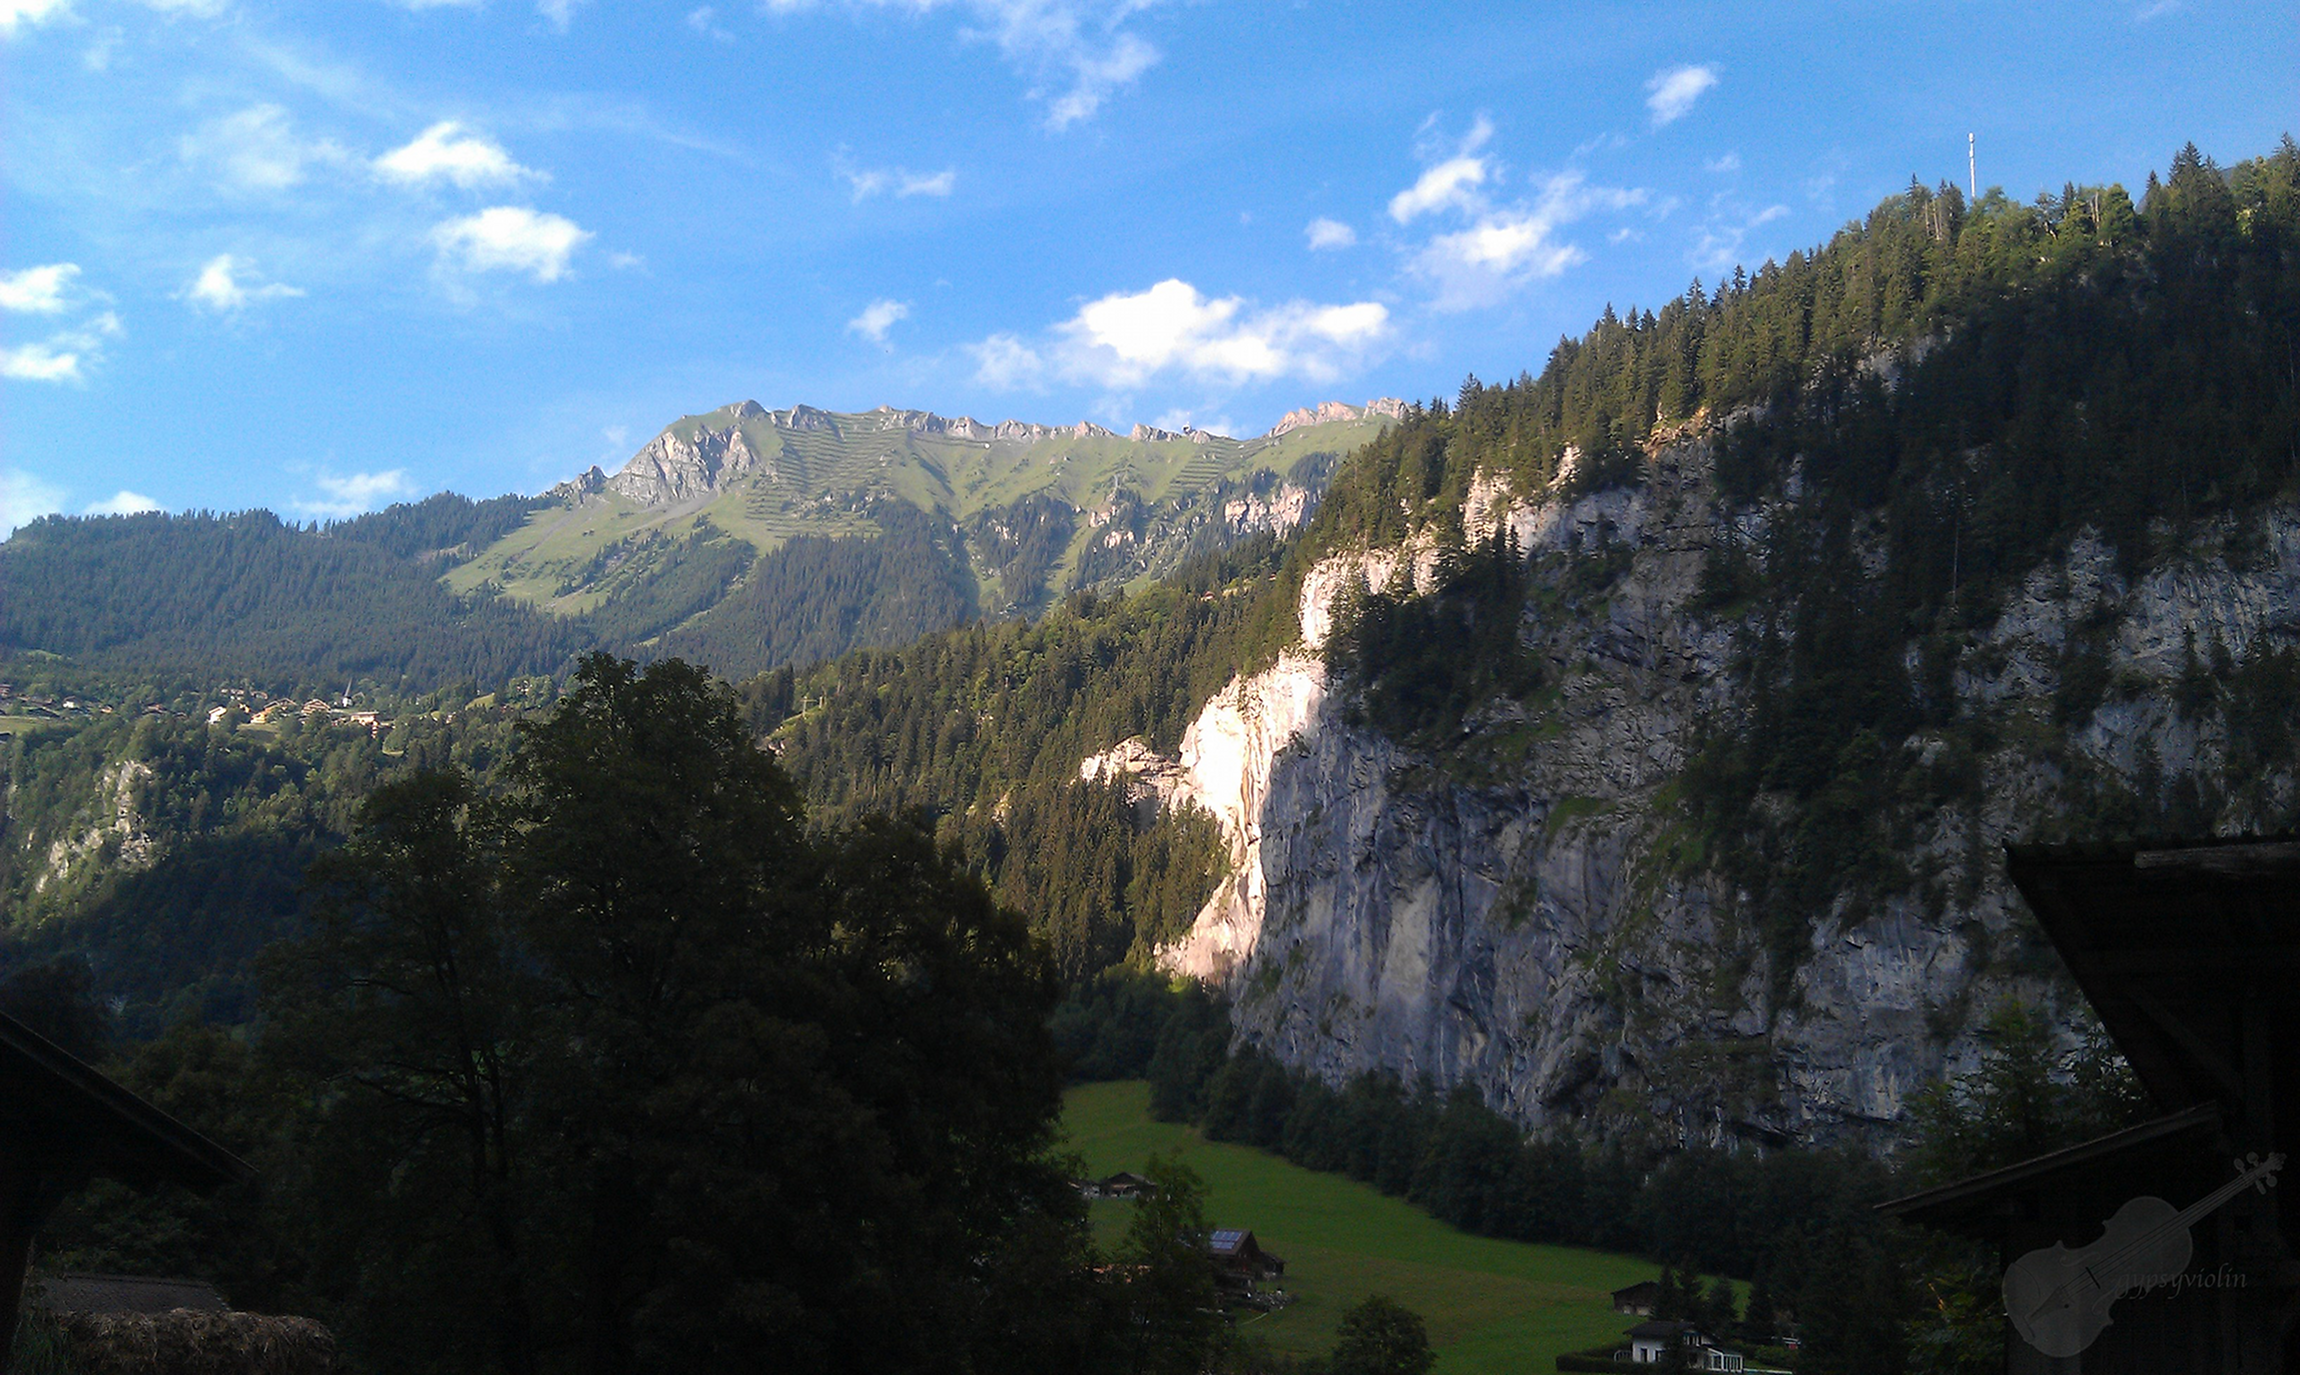 Hills of Lauterbrunnen